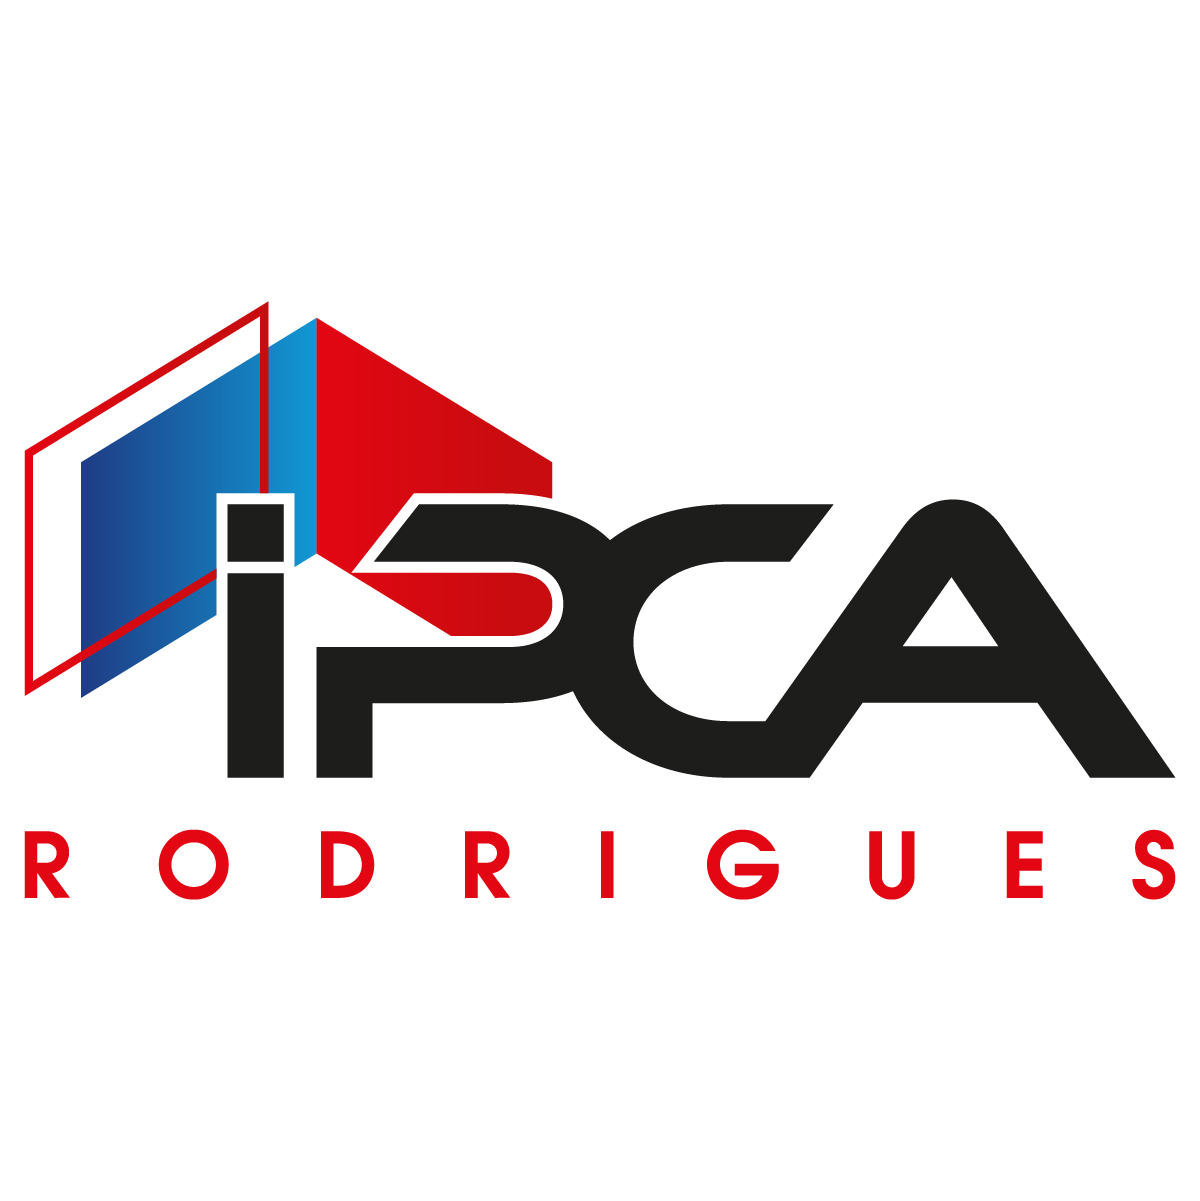 (c) Ipca-rodrigues.com